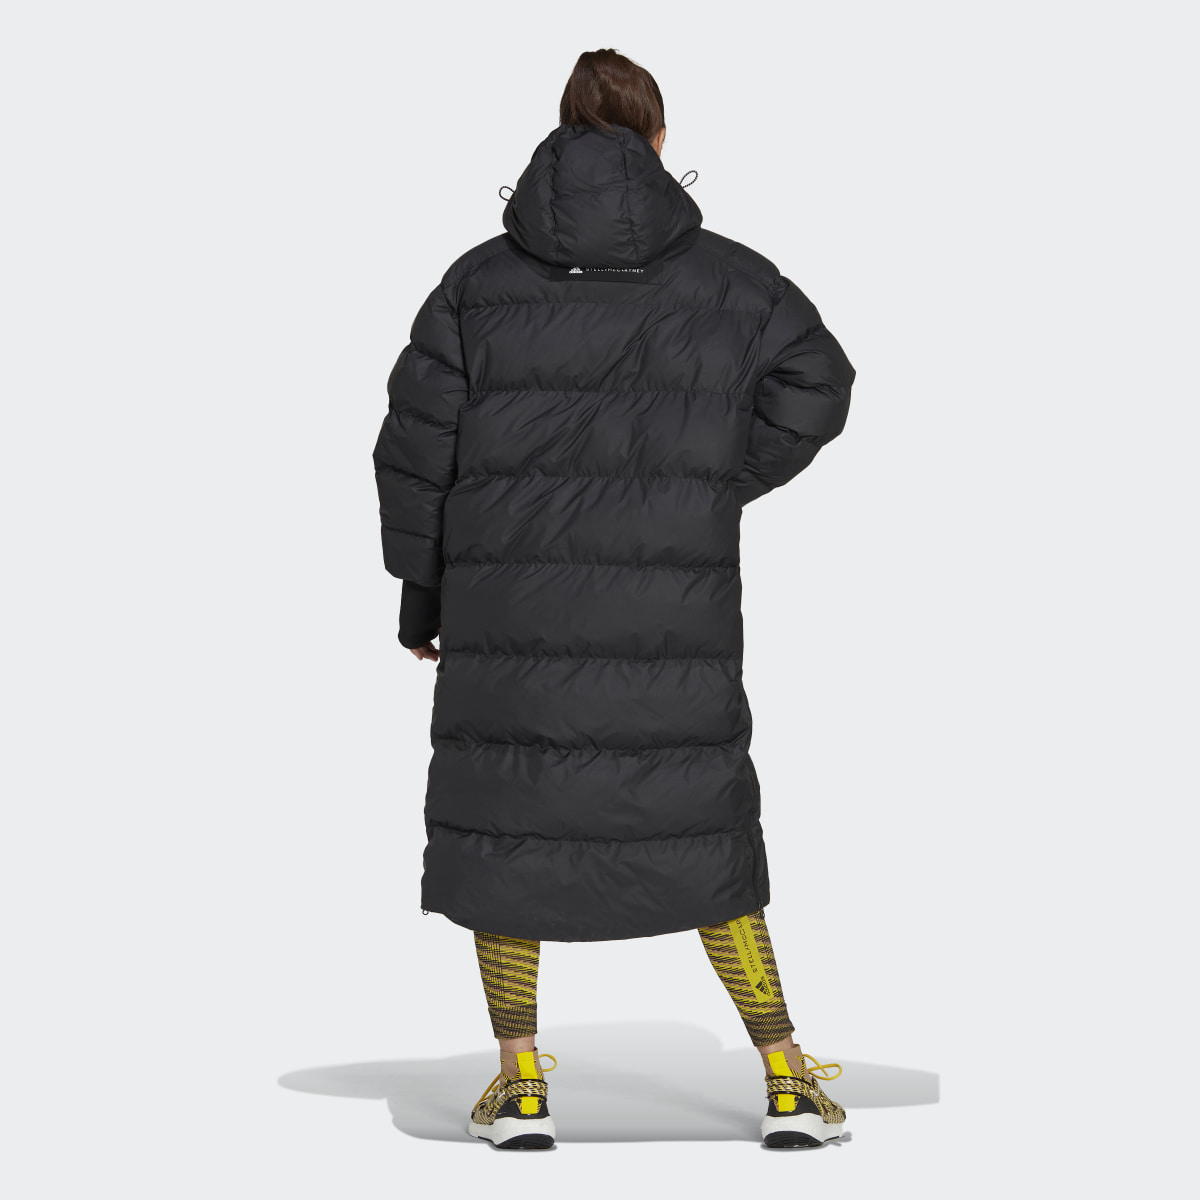 Adidas by Stella McCartney Long Padded Winter Jacket. 3